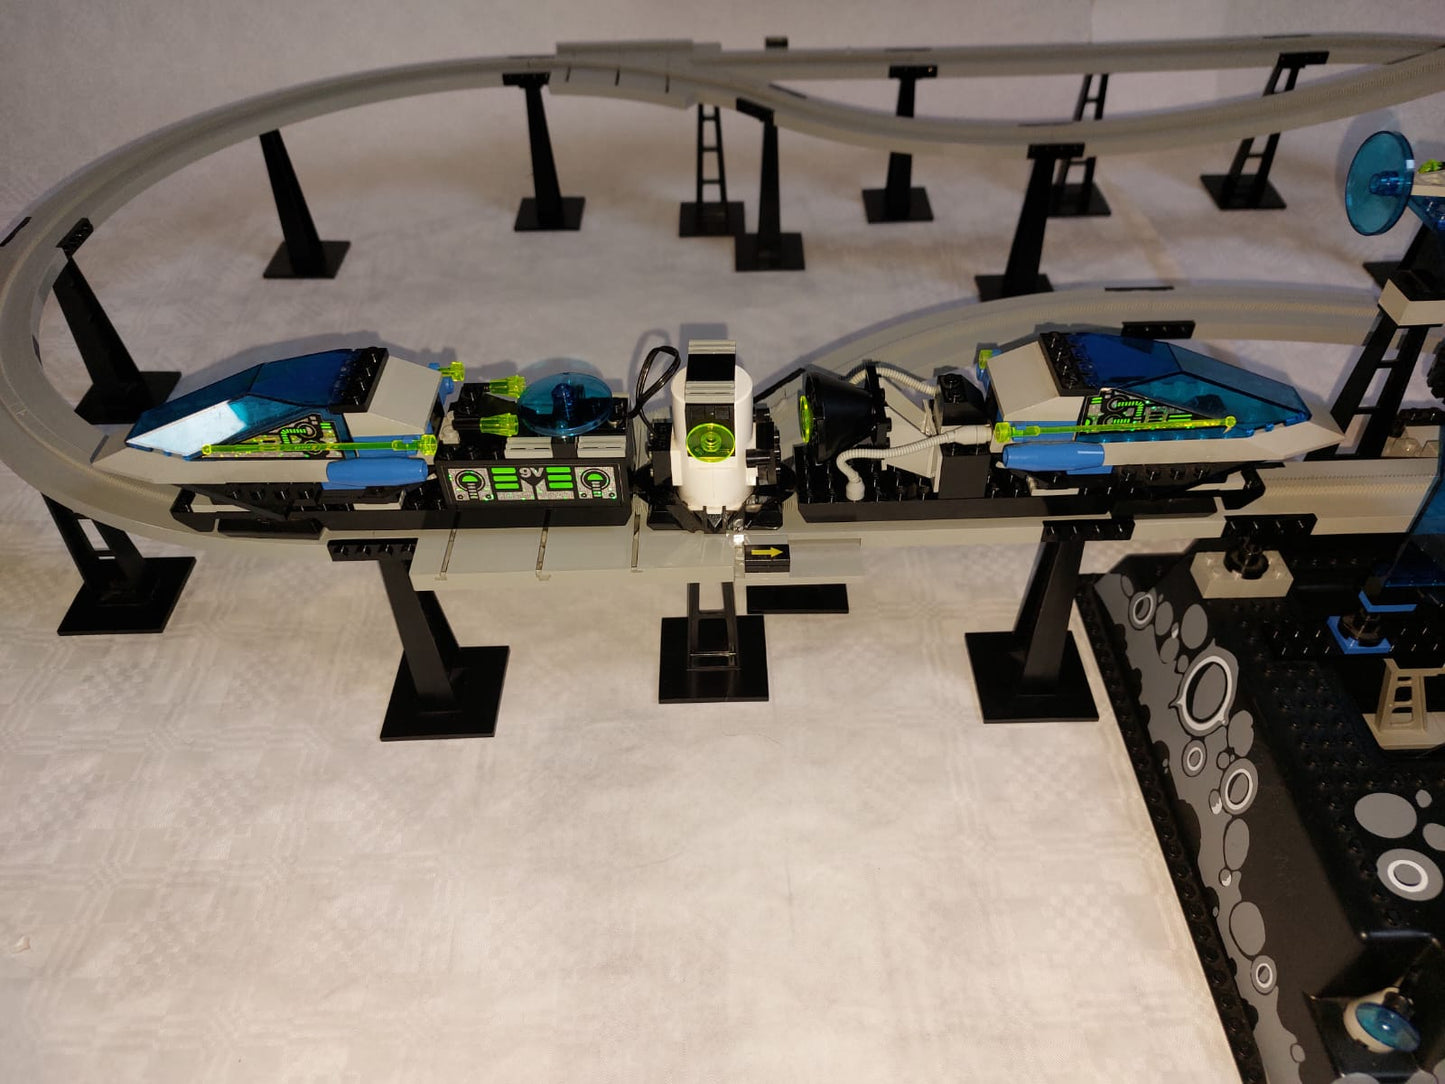 LEGO® System - Set 6991 Space Monorail - Einschienenbahn - inkl. BA (Voll Funktionstüchtig)